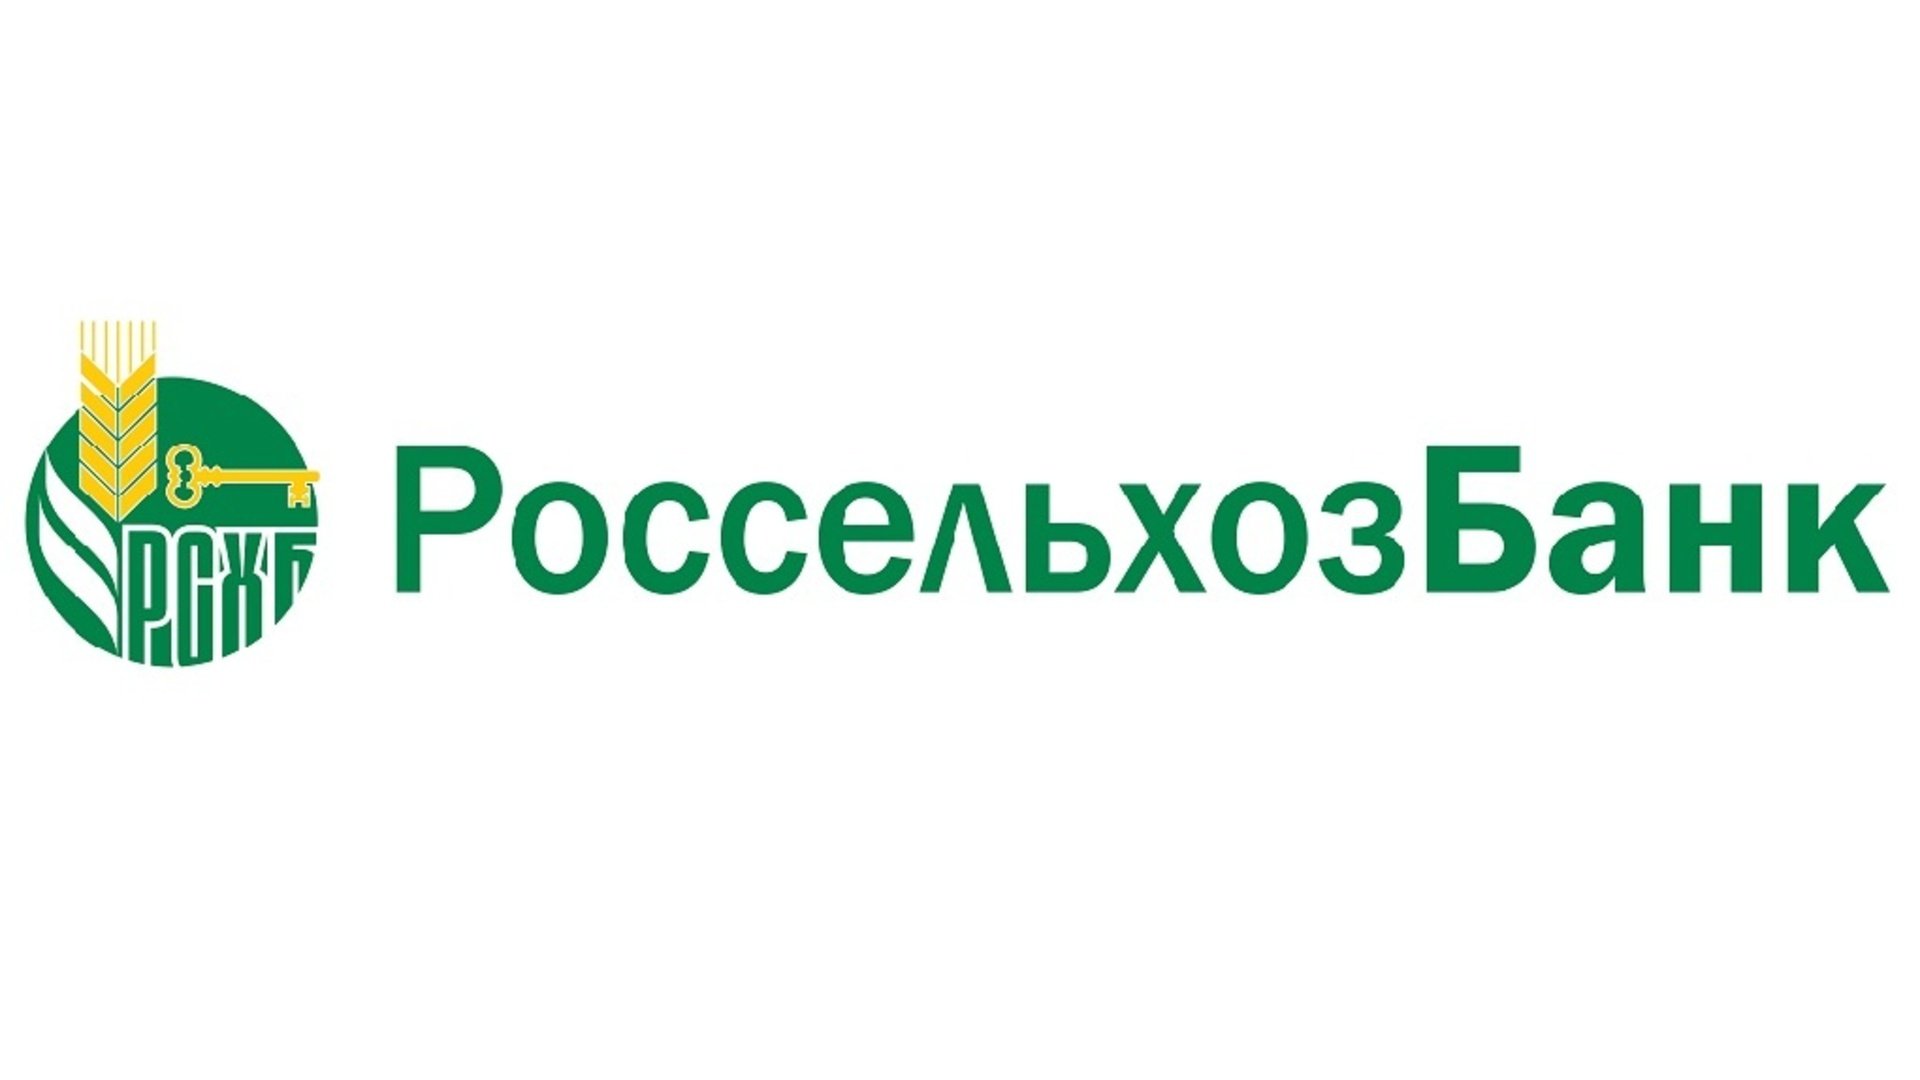 Сайт россельхозбанка ульяновск